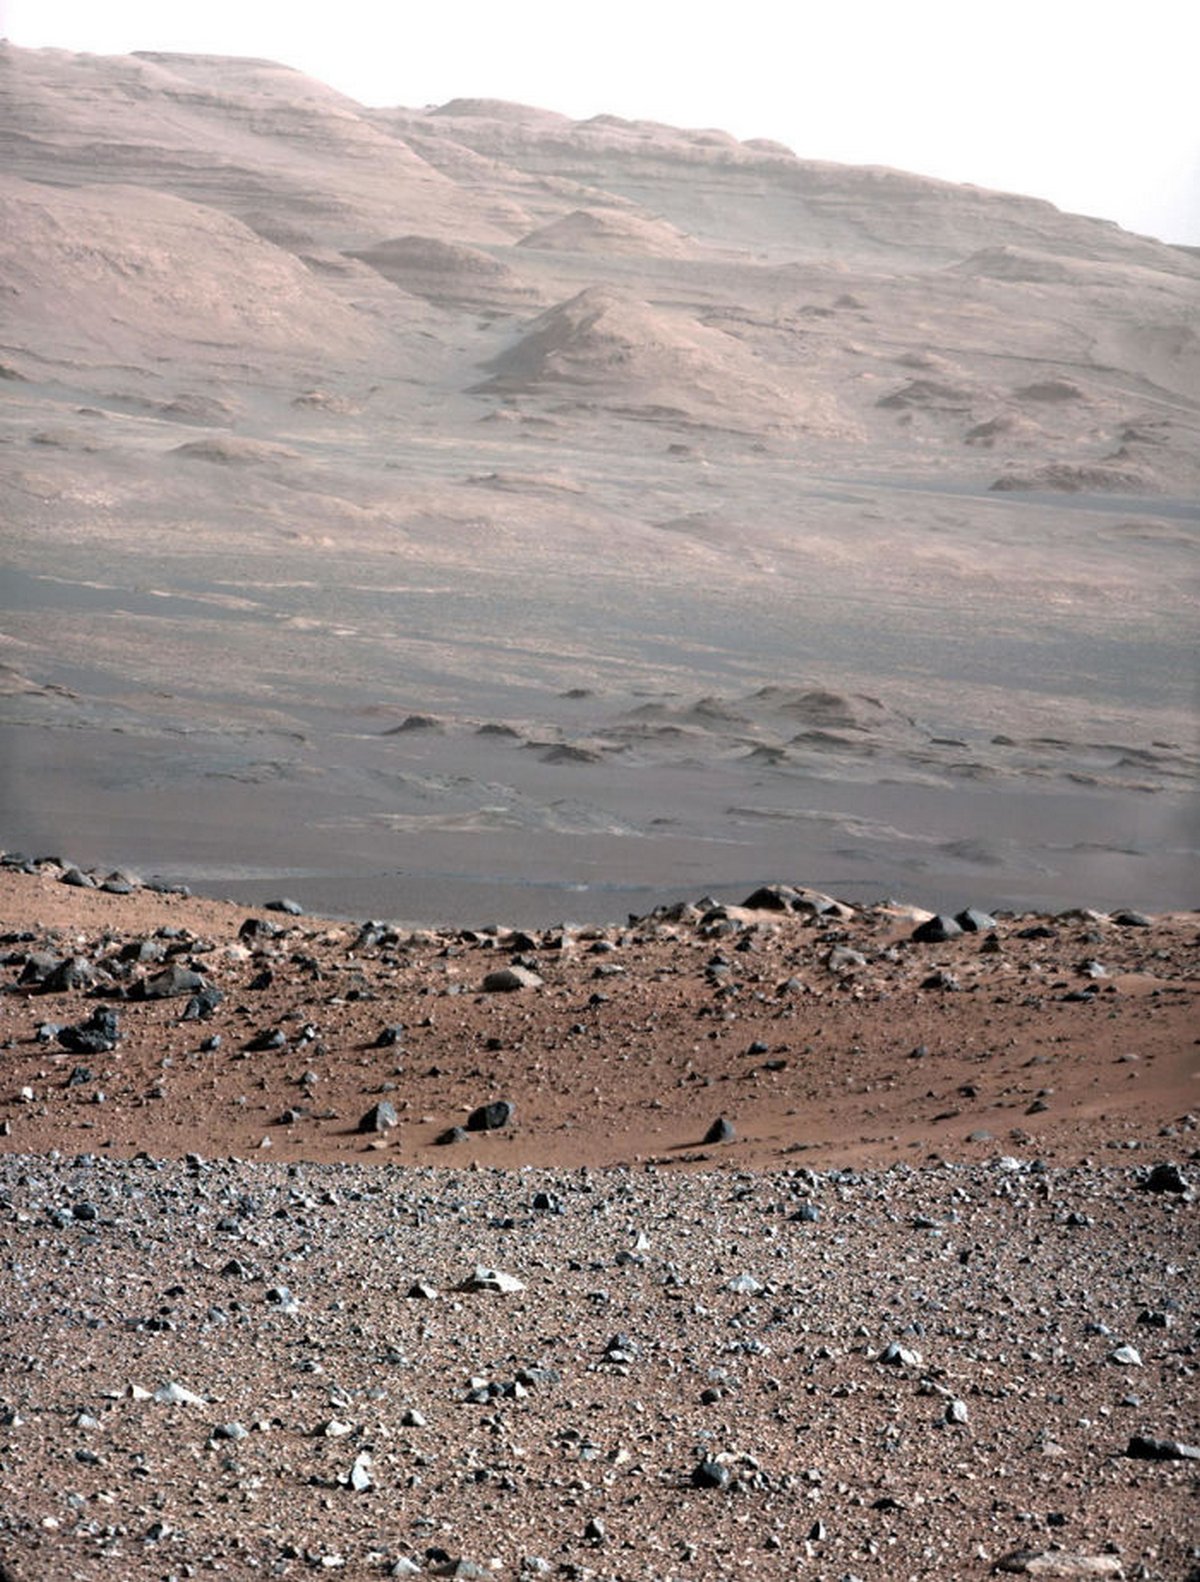 Le rover Curiosity de la NASA est sur Mars depuis plus de 8 ans et voici ses 22 plus belles photos